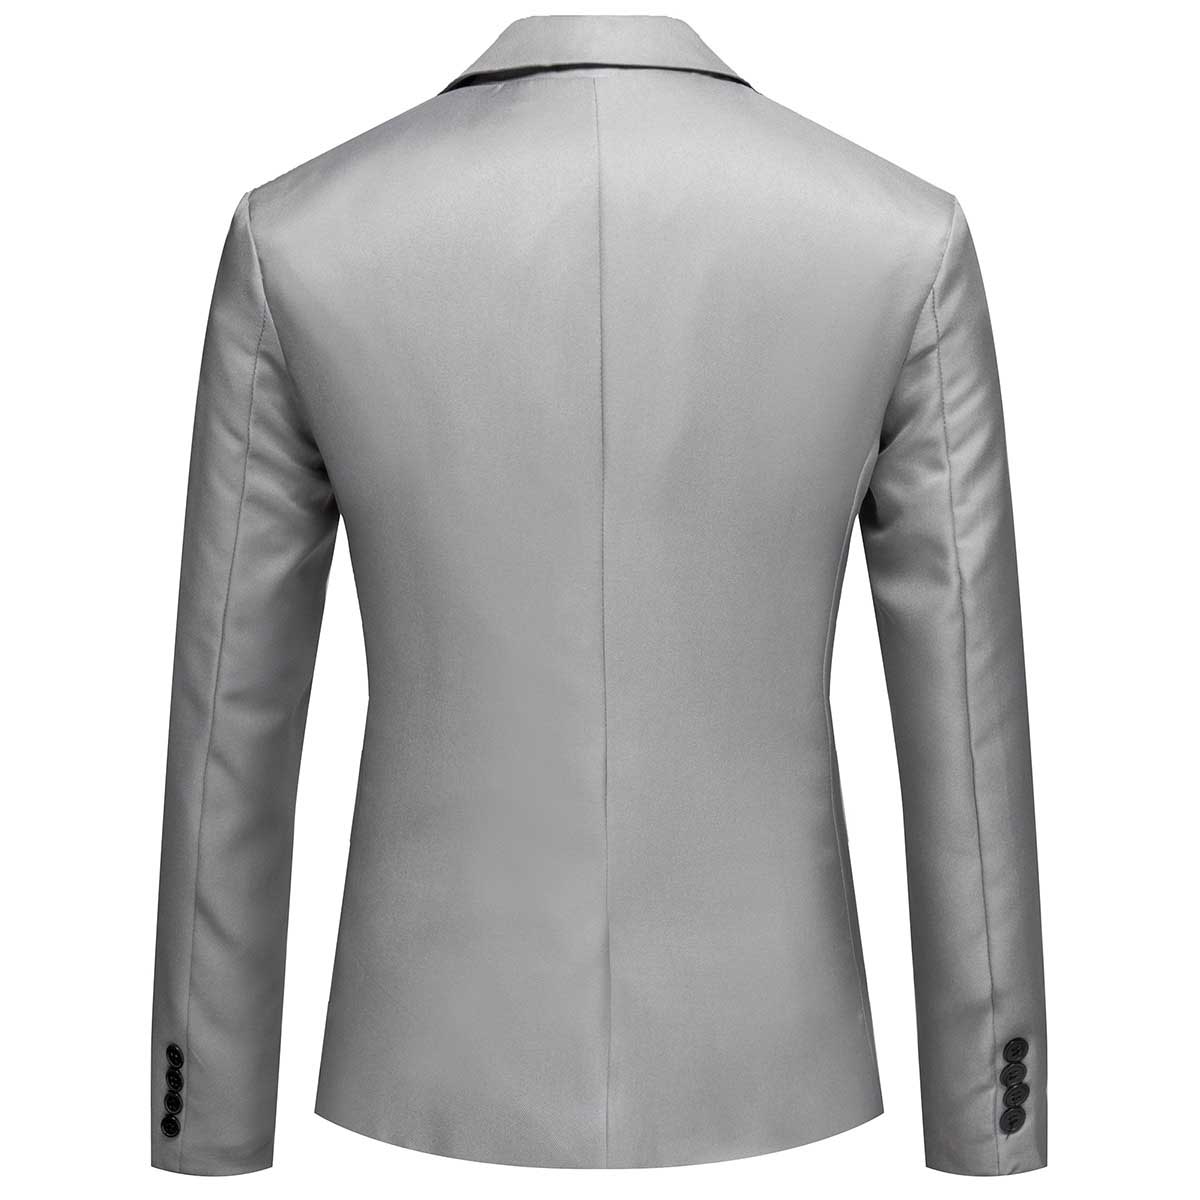 Men's Casual Suit Jacket Slim Fit Lightweight Blazer Coat Grey